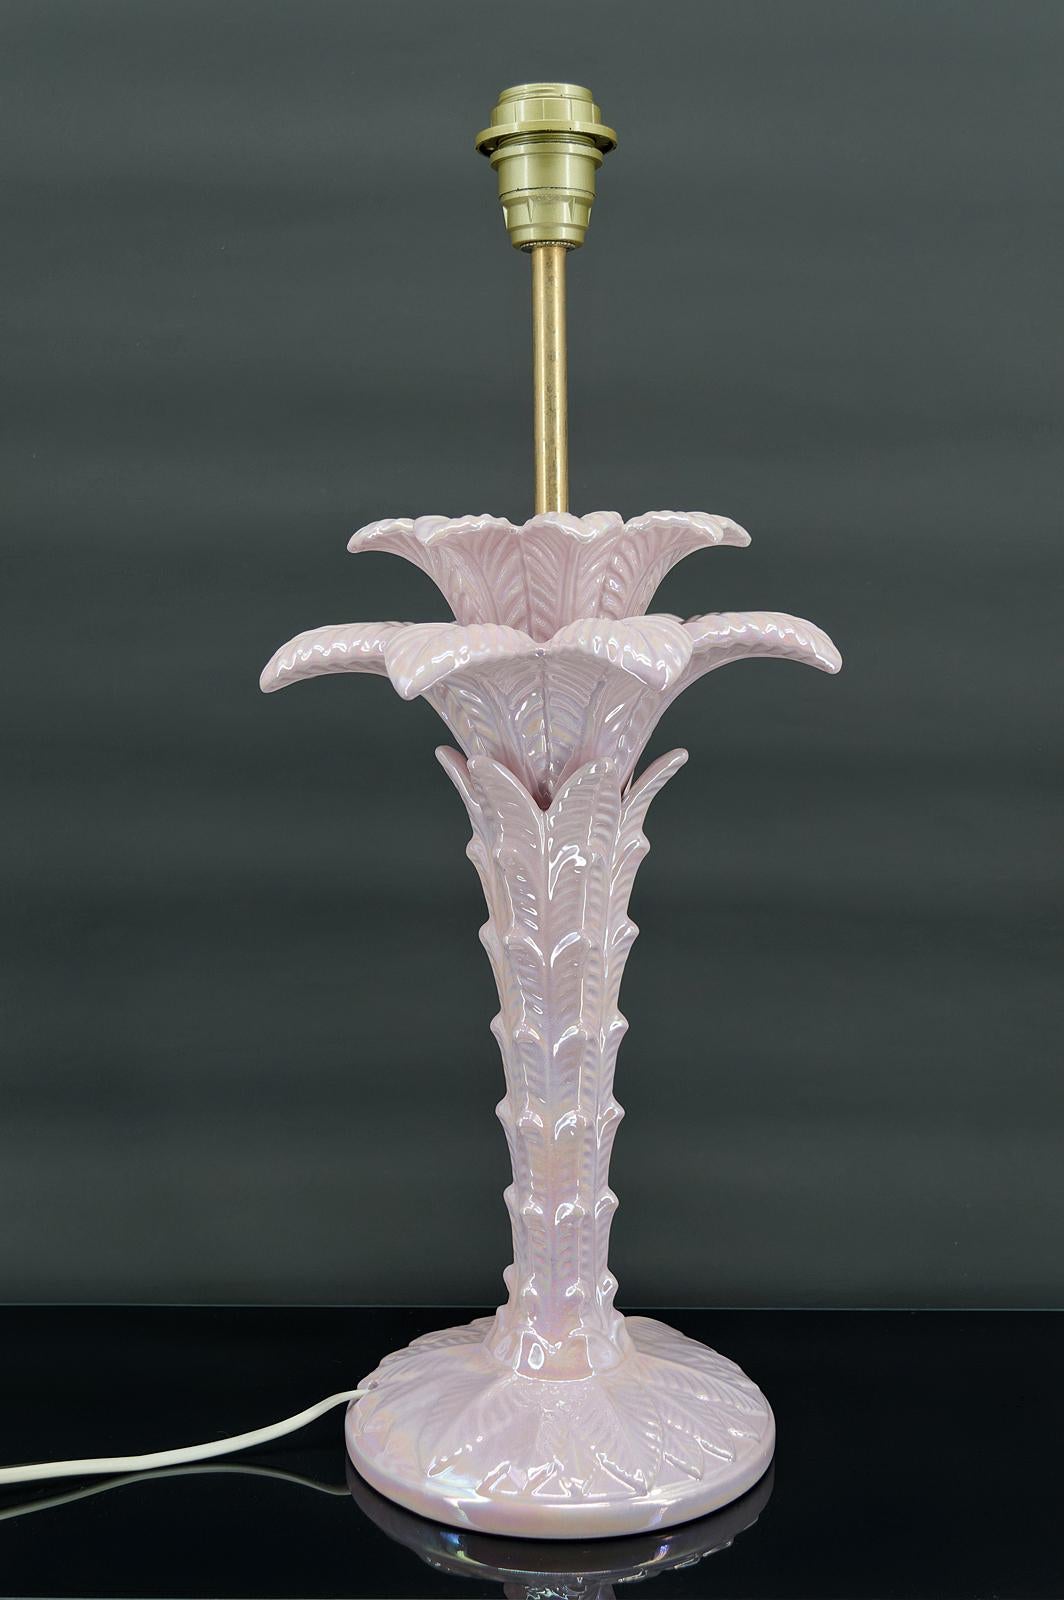 Prächtige Palmenlampe aus perlrosa Keramik.

Italien, um 1960

Hollywood-Regency-Stil.

In ausgezeichnetem Zustand, Strom OK.

Abmessungen:
Höhe 58 cm
Durchmesser 28 cm

